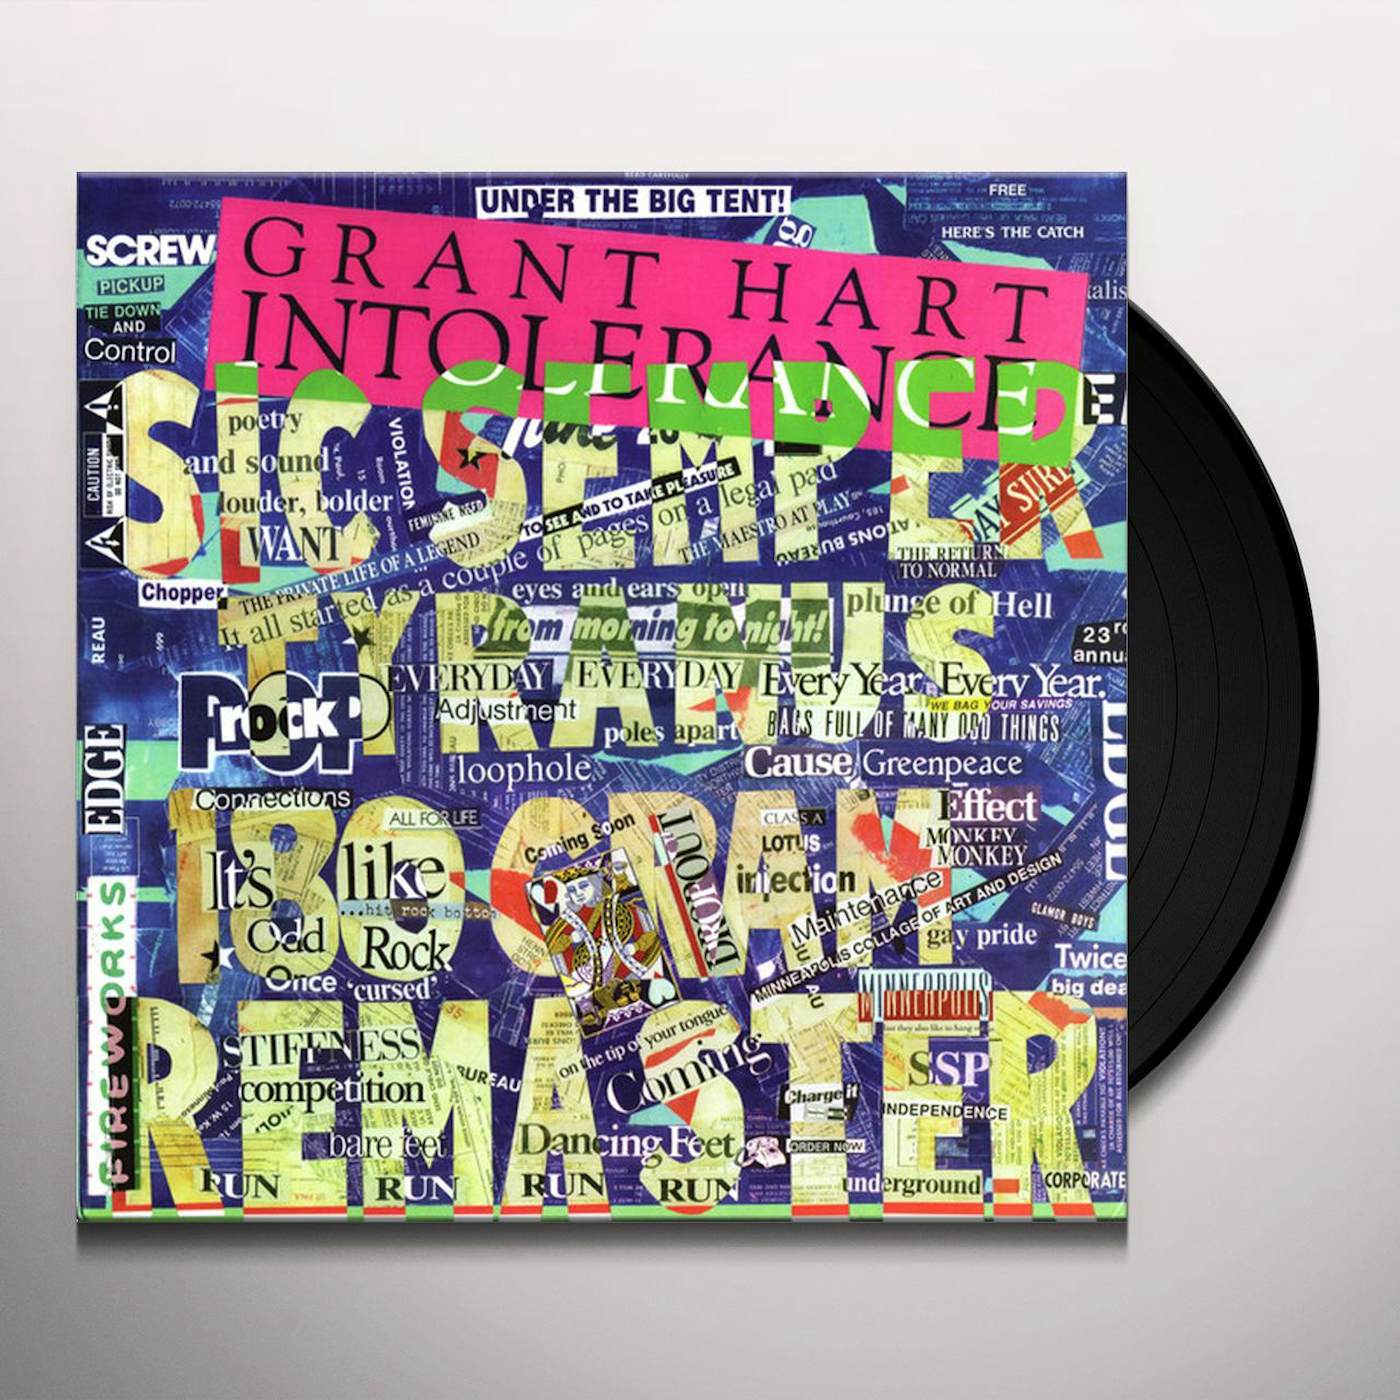 Grant Hart Intolerance Vinyl Record